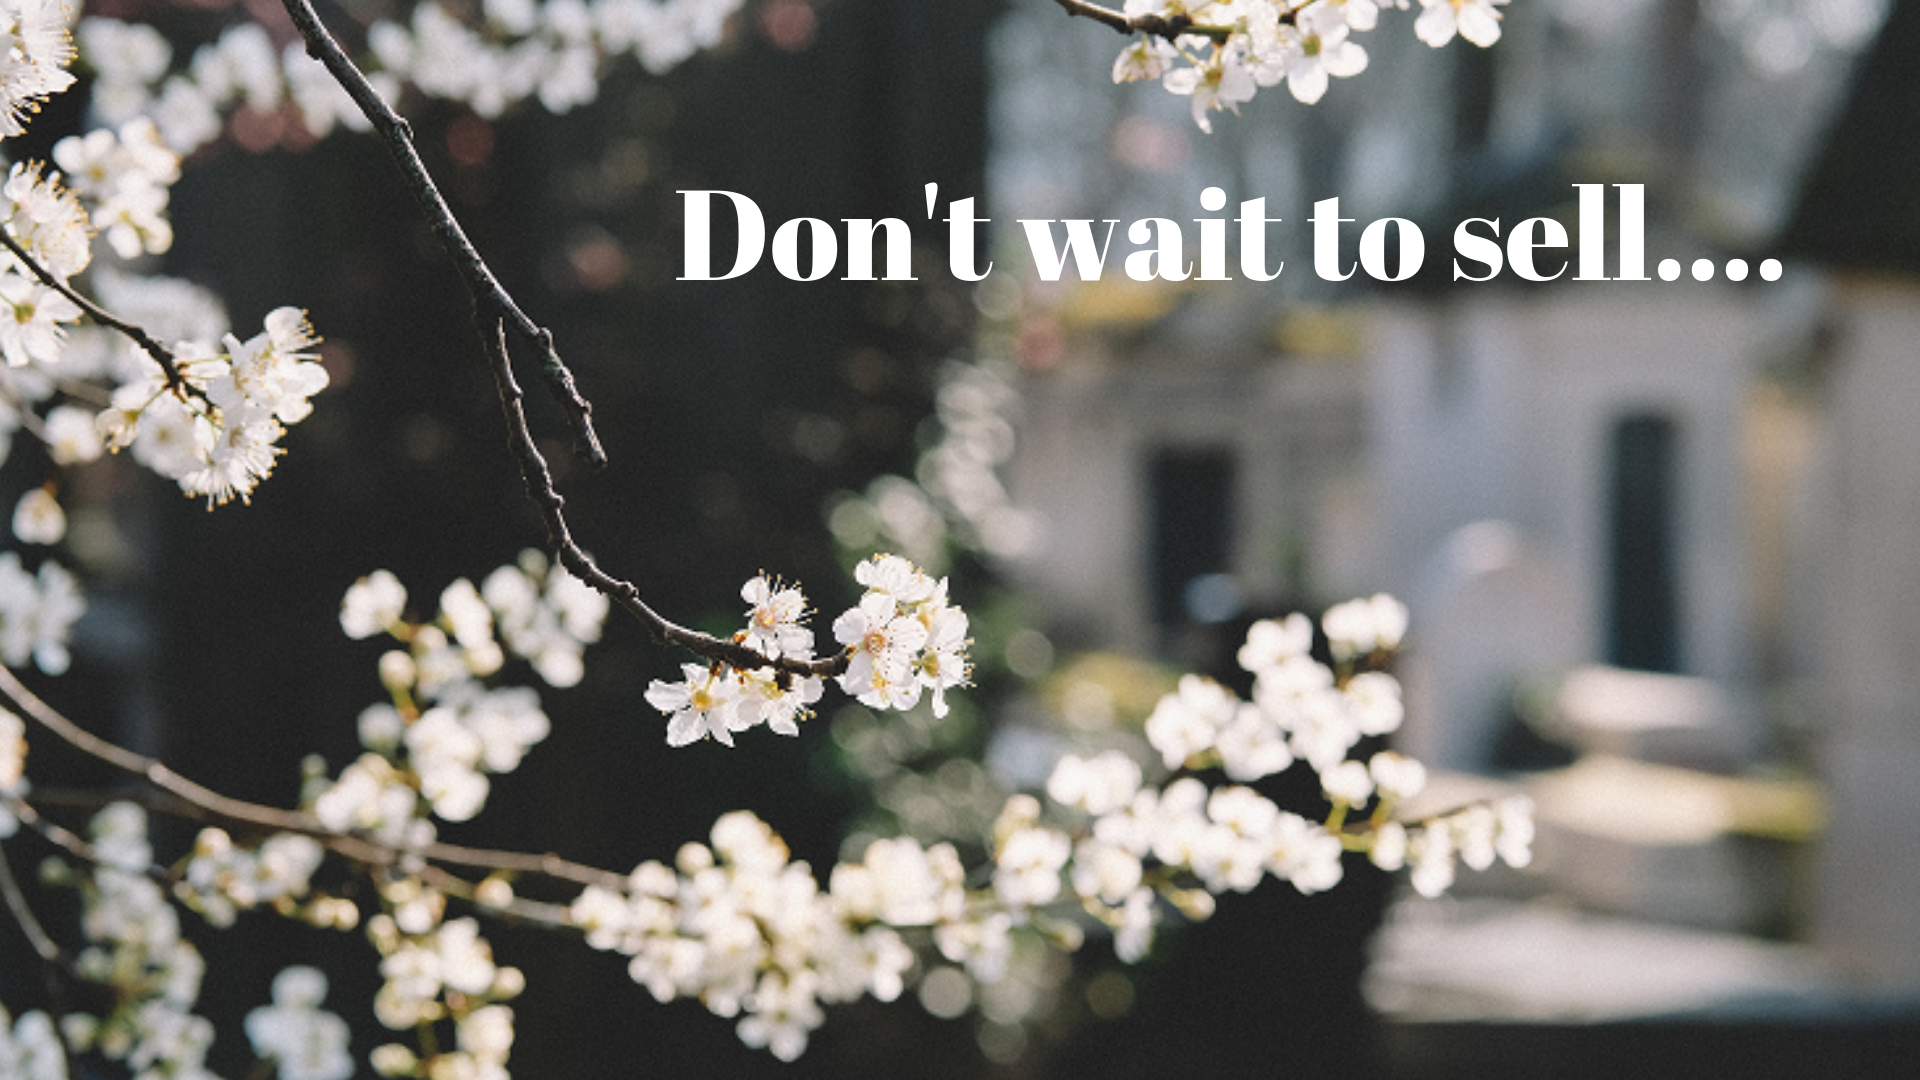 don't wait